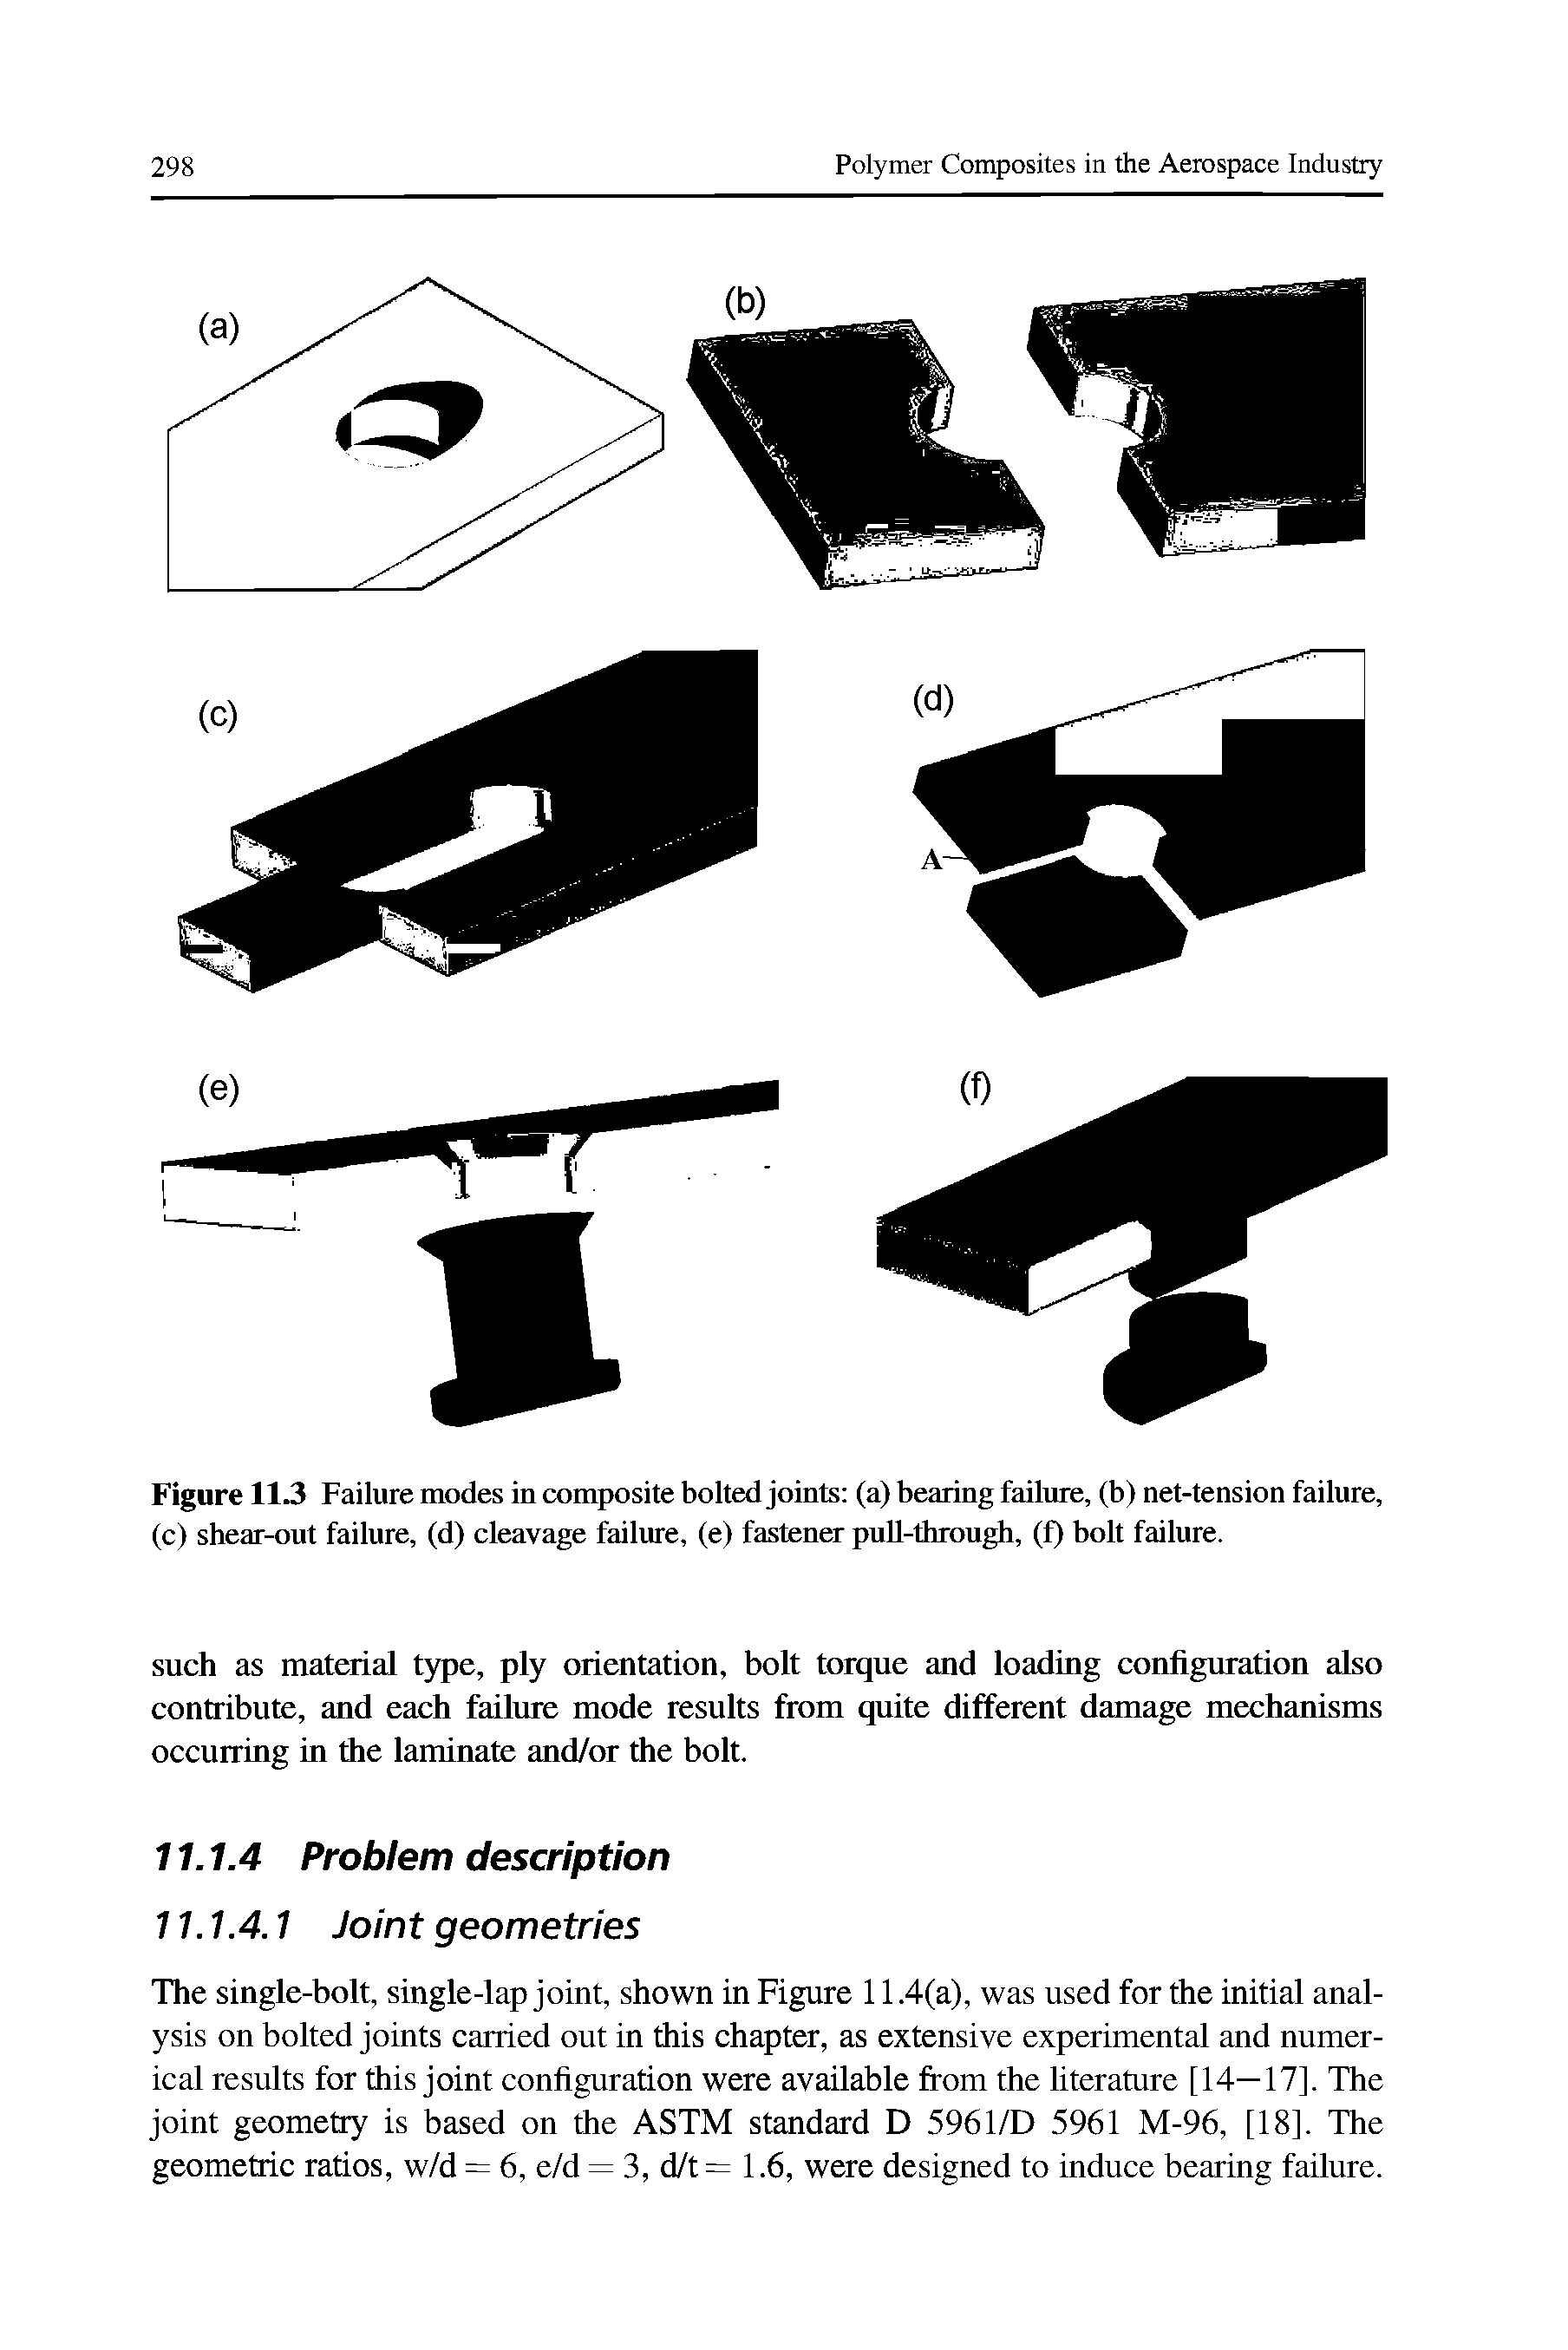 Figure 113 Failure modes in composite bolted joints (a) bearing failure, (b) net-tension failure, (c) shear-out failure, (d) cleavage failure, (e) fastener puU-through, (f) bolt failure.